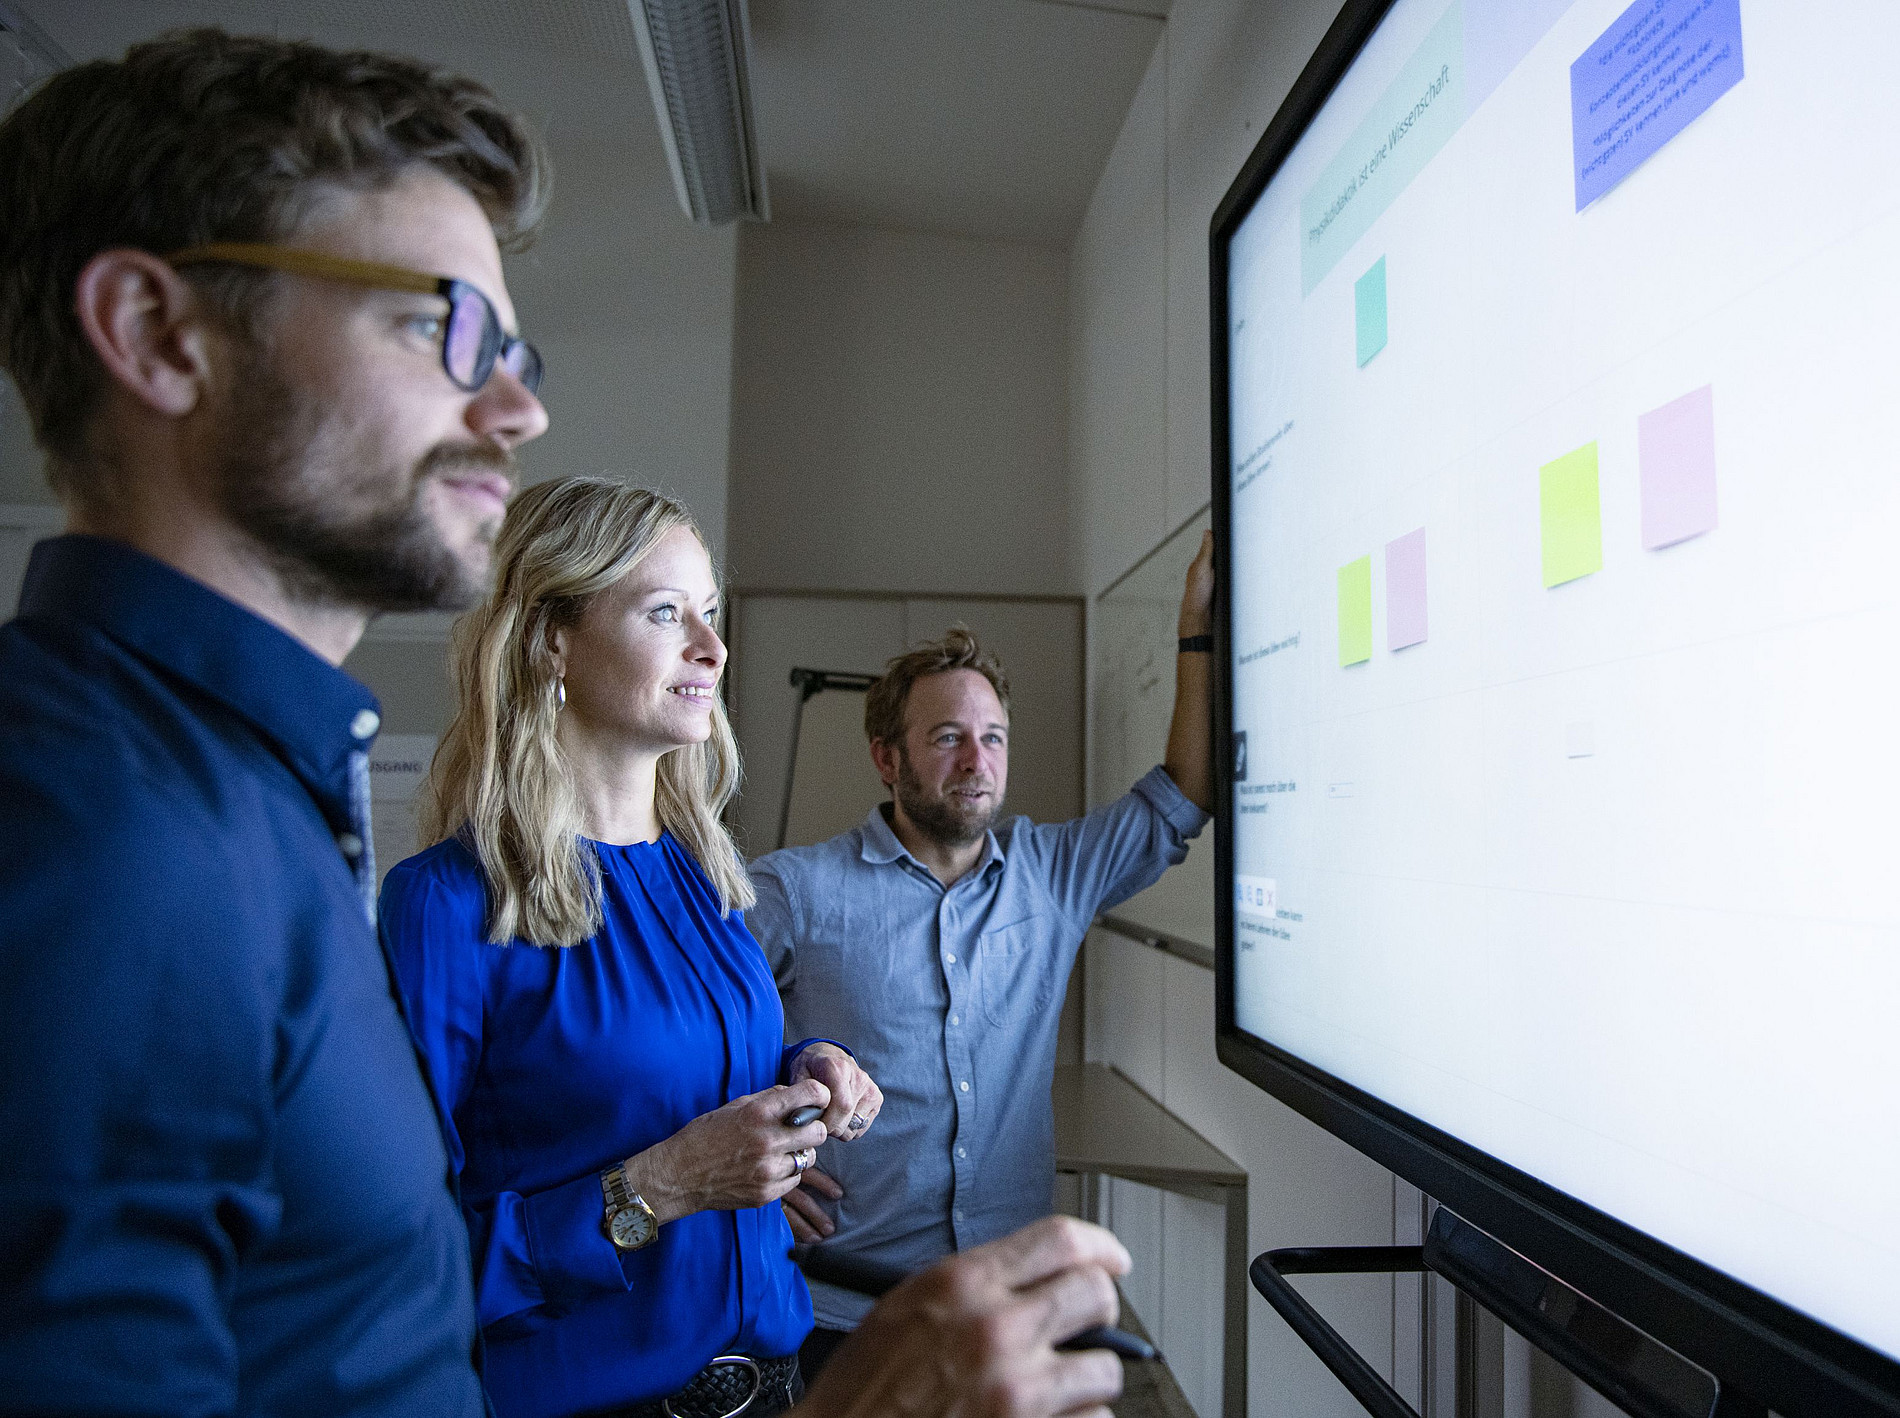 Das Bild zeigt drei Personen die vor einem Smartboard stehen und sich Daten ansehen. ©Uni Graz/Tzivanopoulos